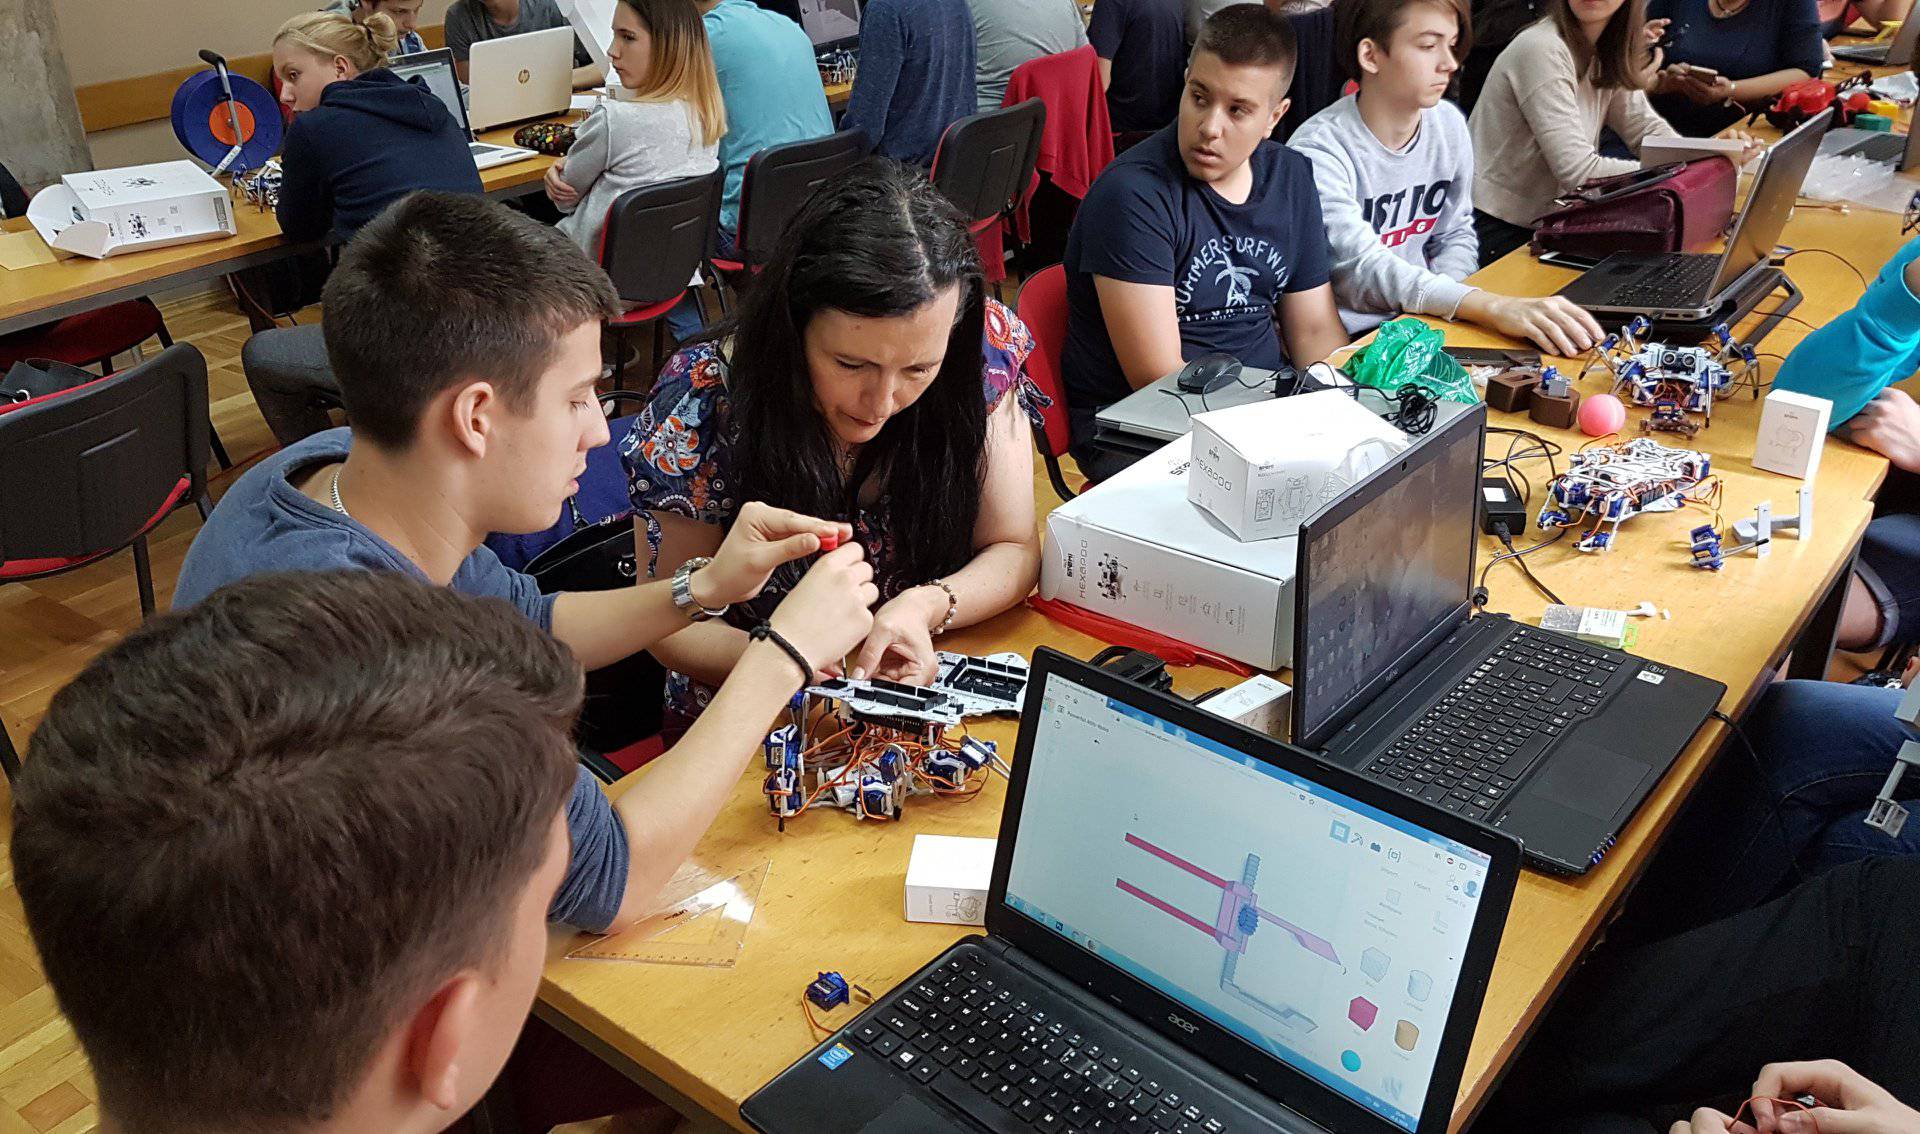 Hrvatski robot će podučavati djecu u školama diljem svijeta